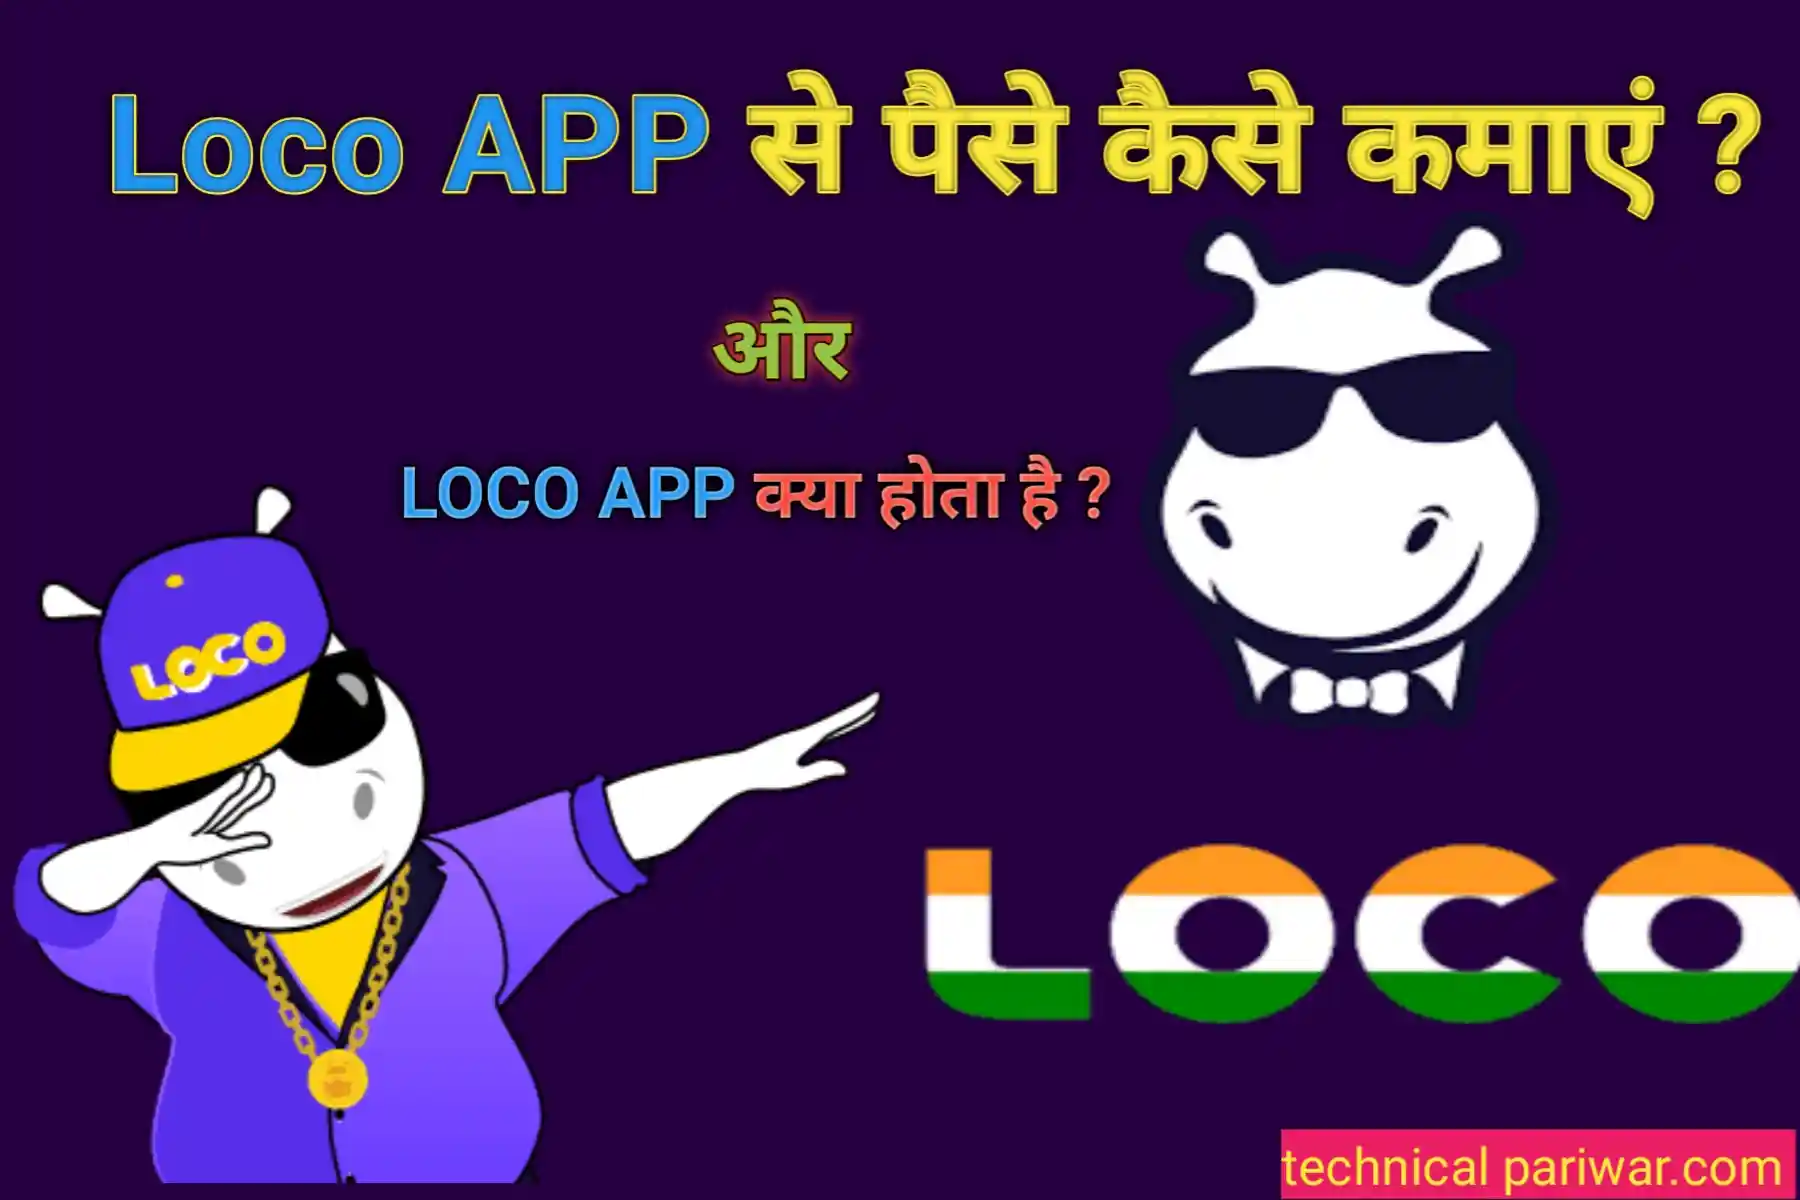 Loco App se paise kaise kamaye